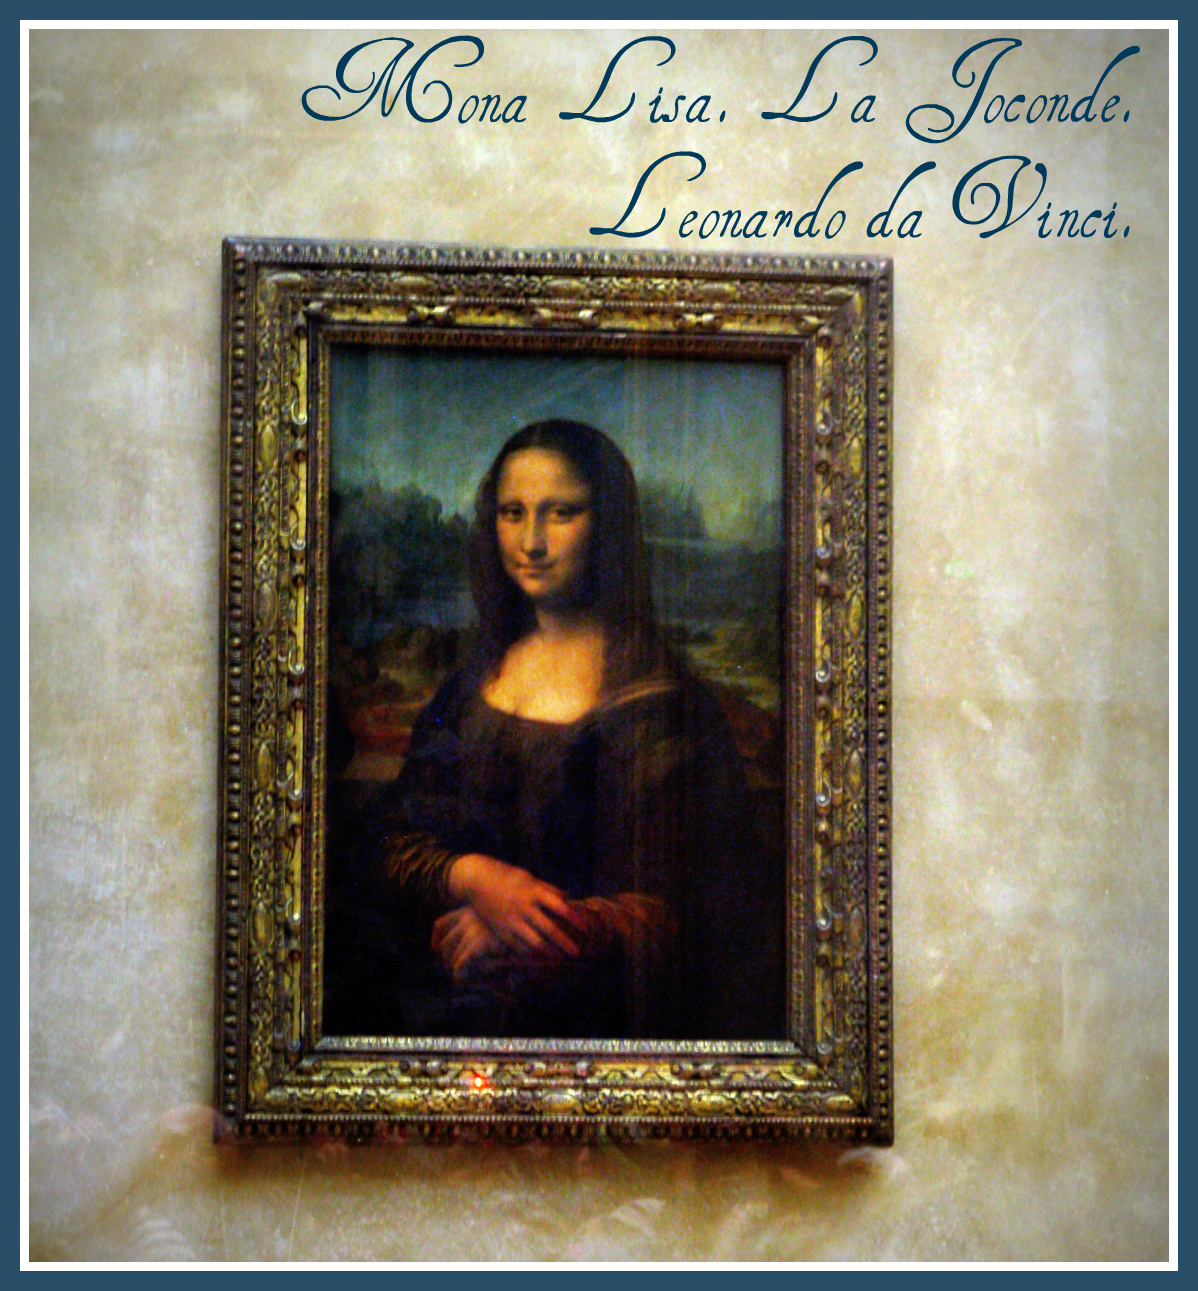 Staring at the Mona Lisa, La Joconde, at the Louvre